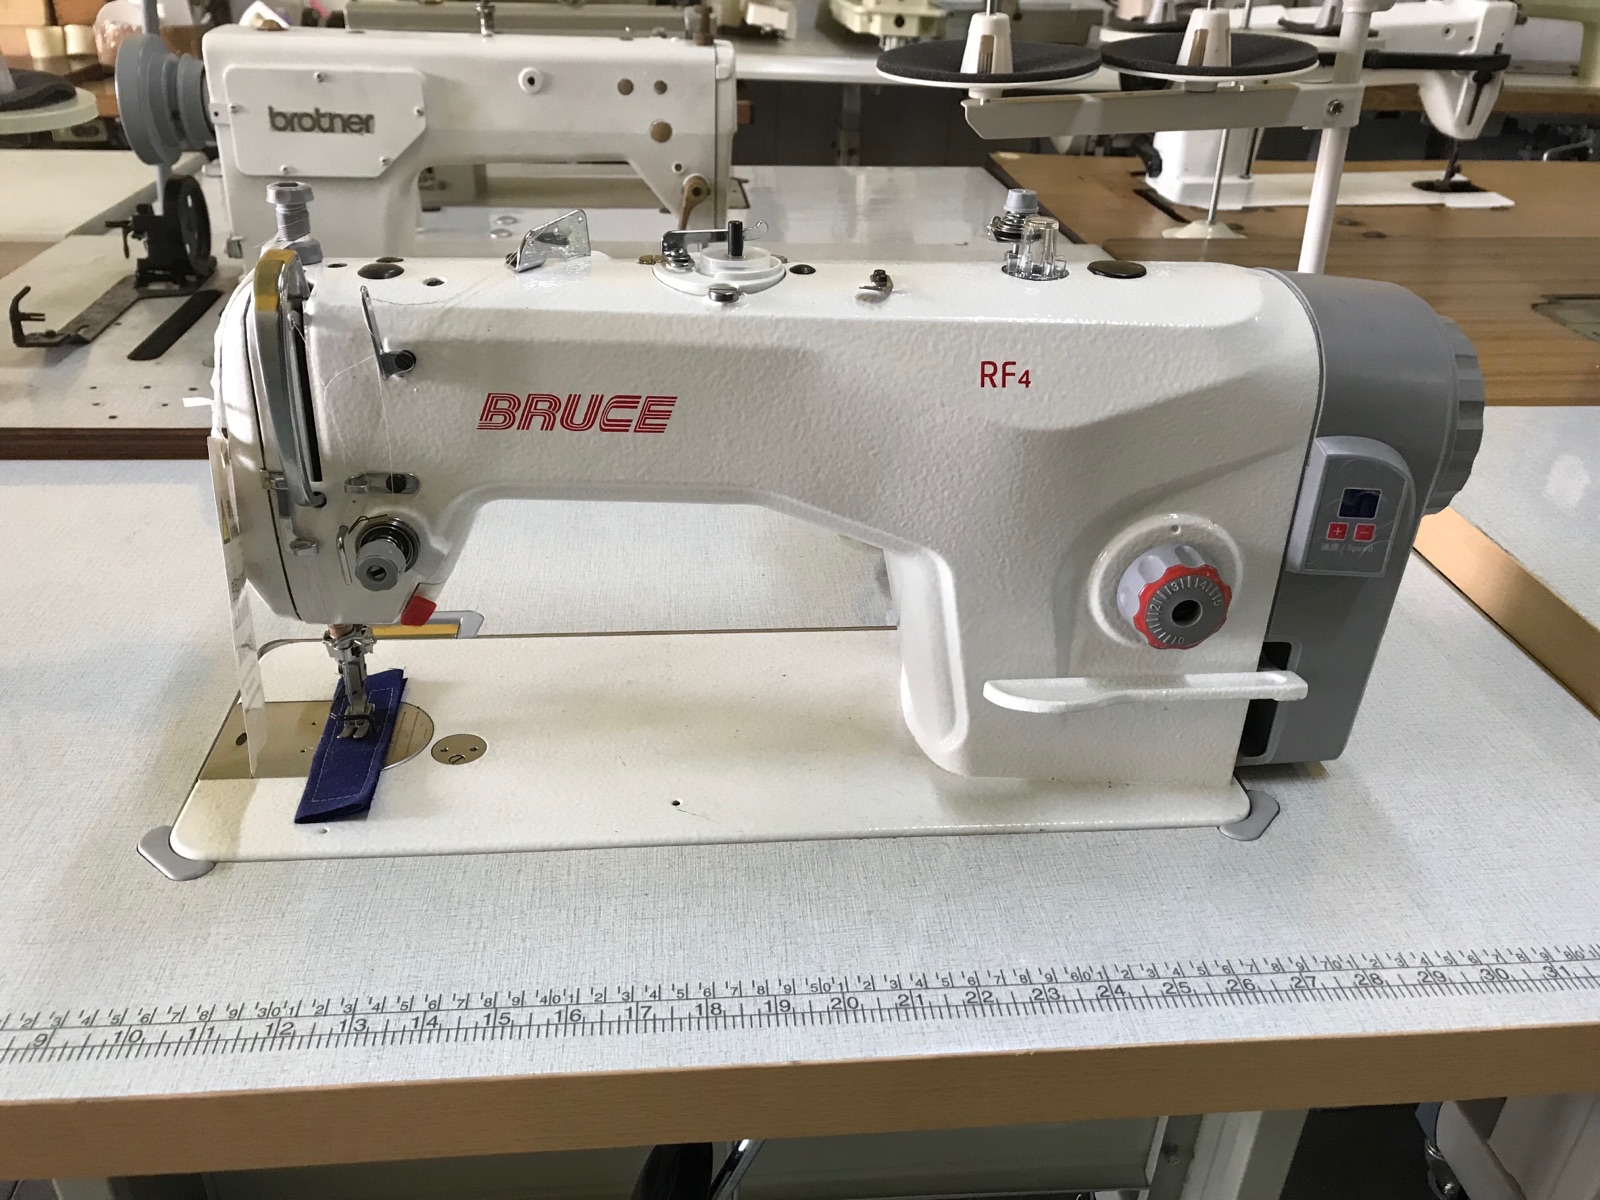 Bruce Hi Speed Sewing Machine